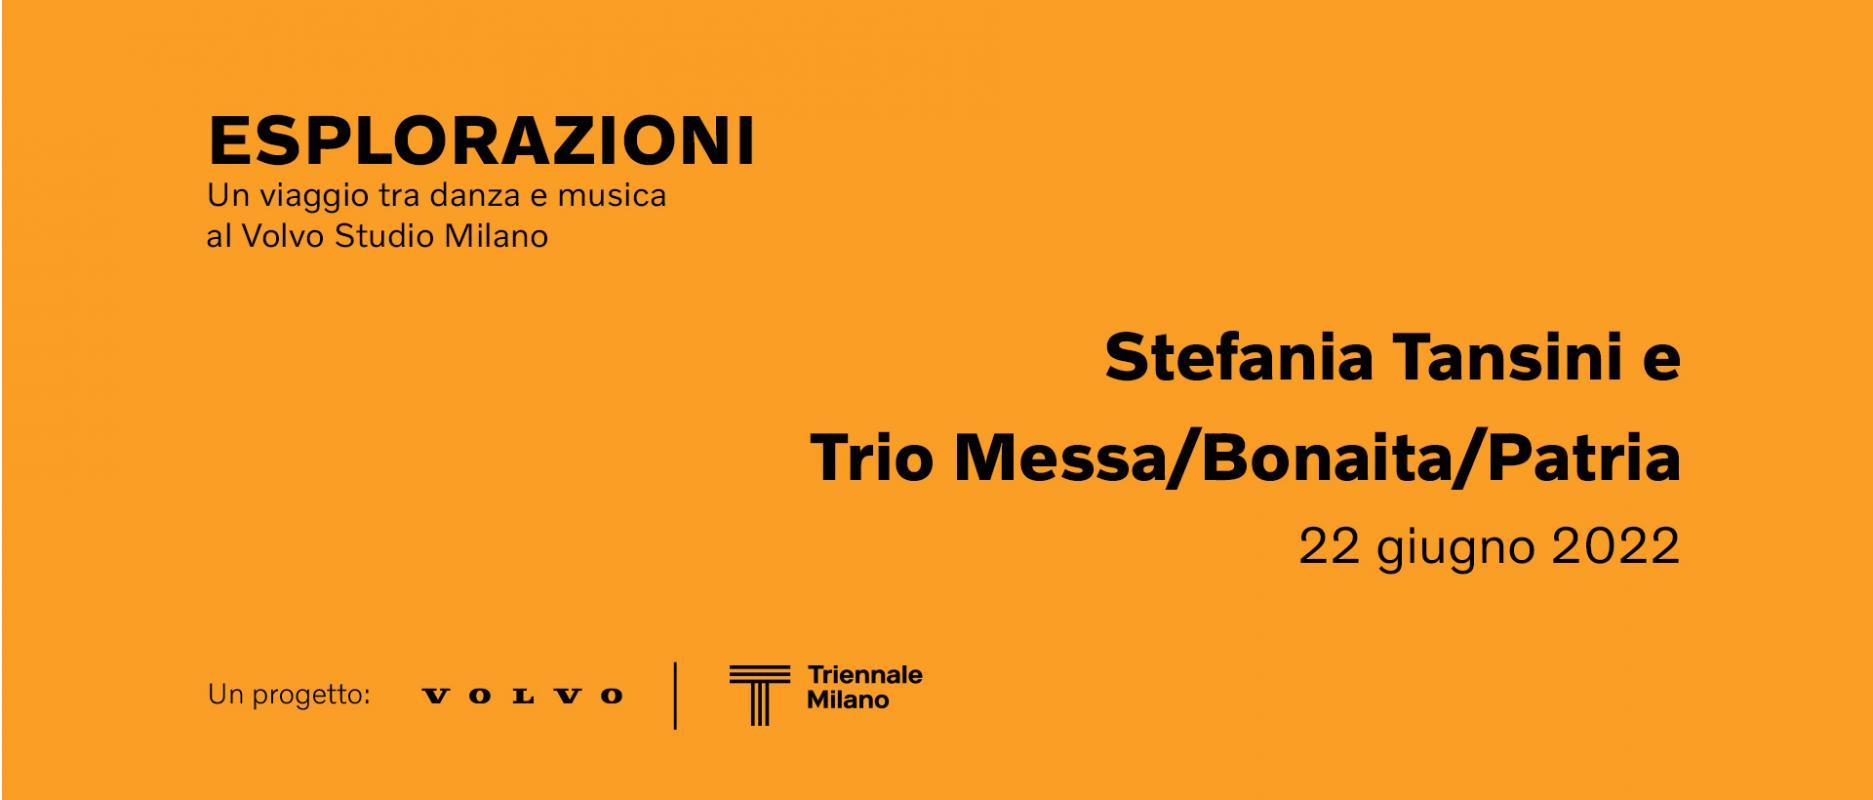 Esplorazioni - Un Viaggio Tra Danza e Musica | Stefania Tansini e Trio Messa - Bonaita - Patria 